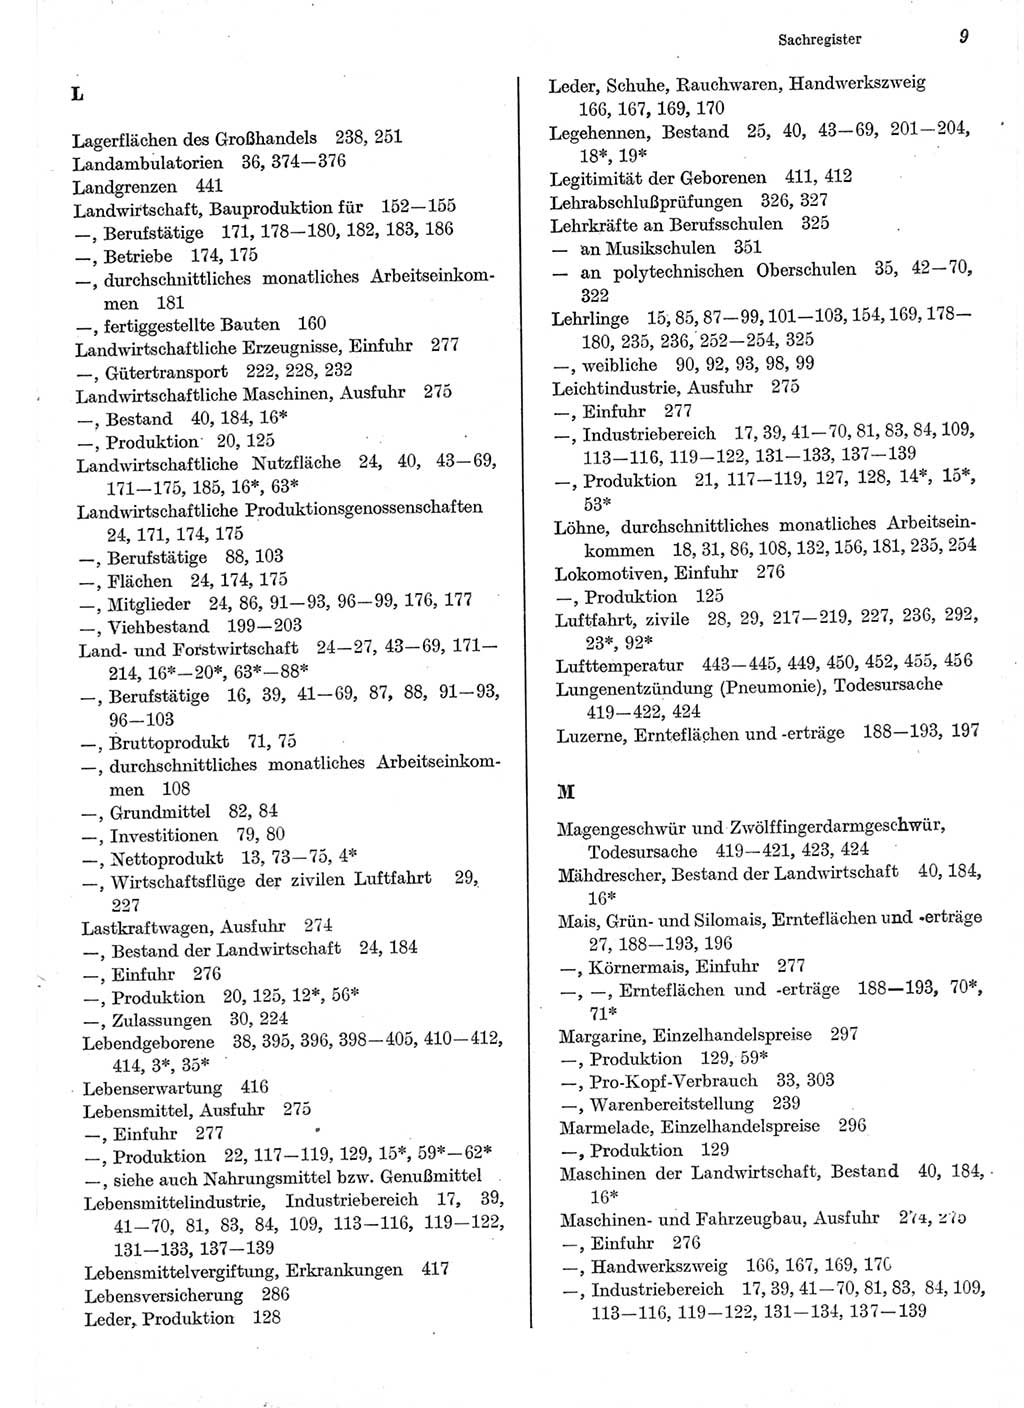 Statistisches Jahrbuch der Deutschen Demokratischen Republik (DDR) 1977, Seite 9 (Stat. Jb. DDR 1977, S. 9)